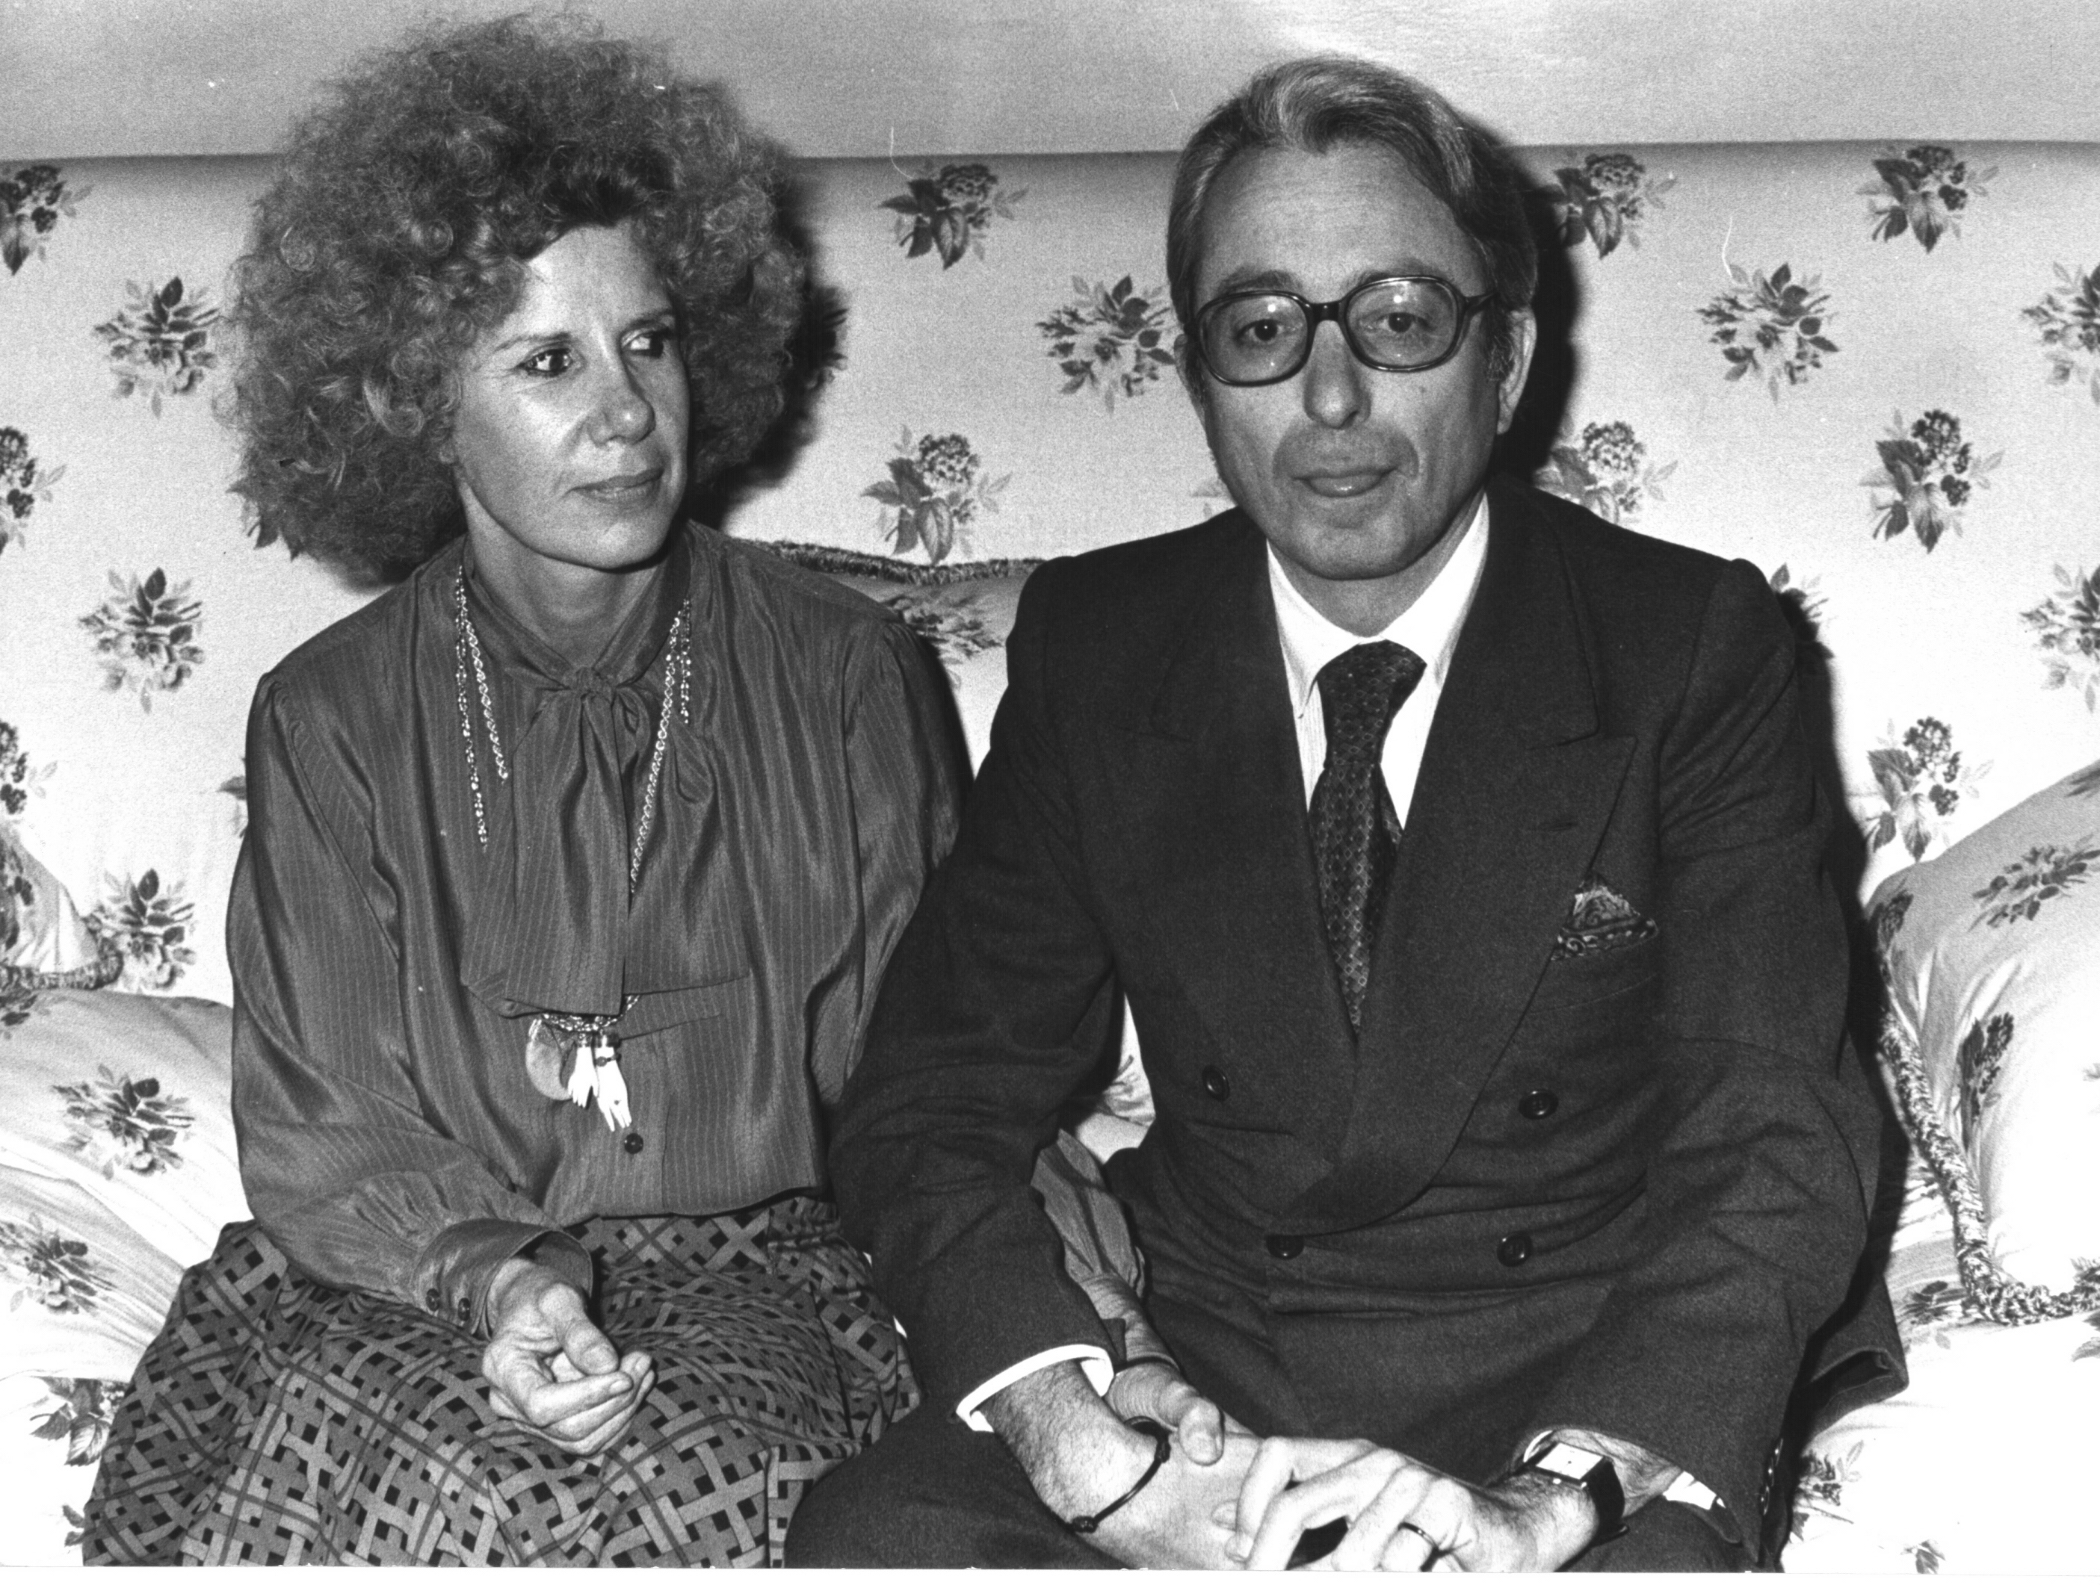 La duquesa de Alba y Jesús Aguirre se casaron en marzo de 1978. En 1969 él había abandonado la carrera eclesiástica.